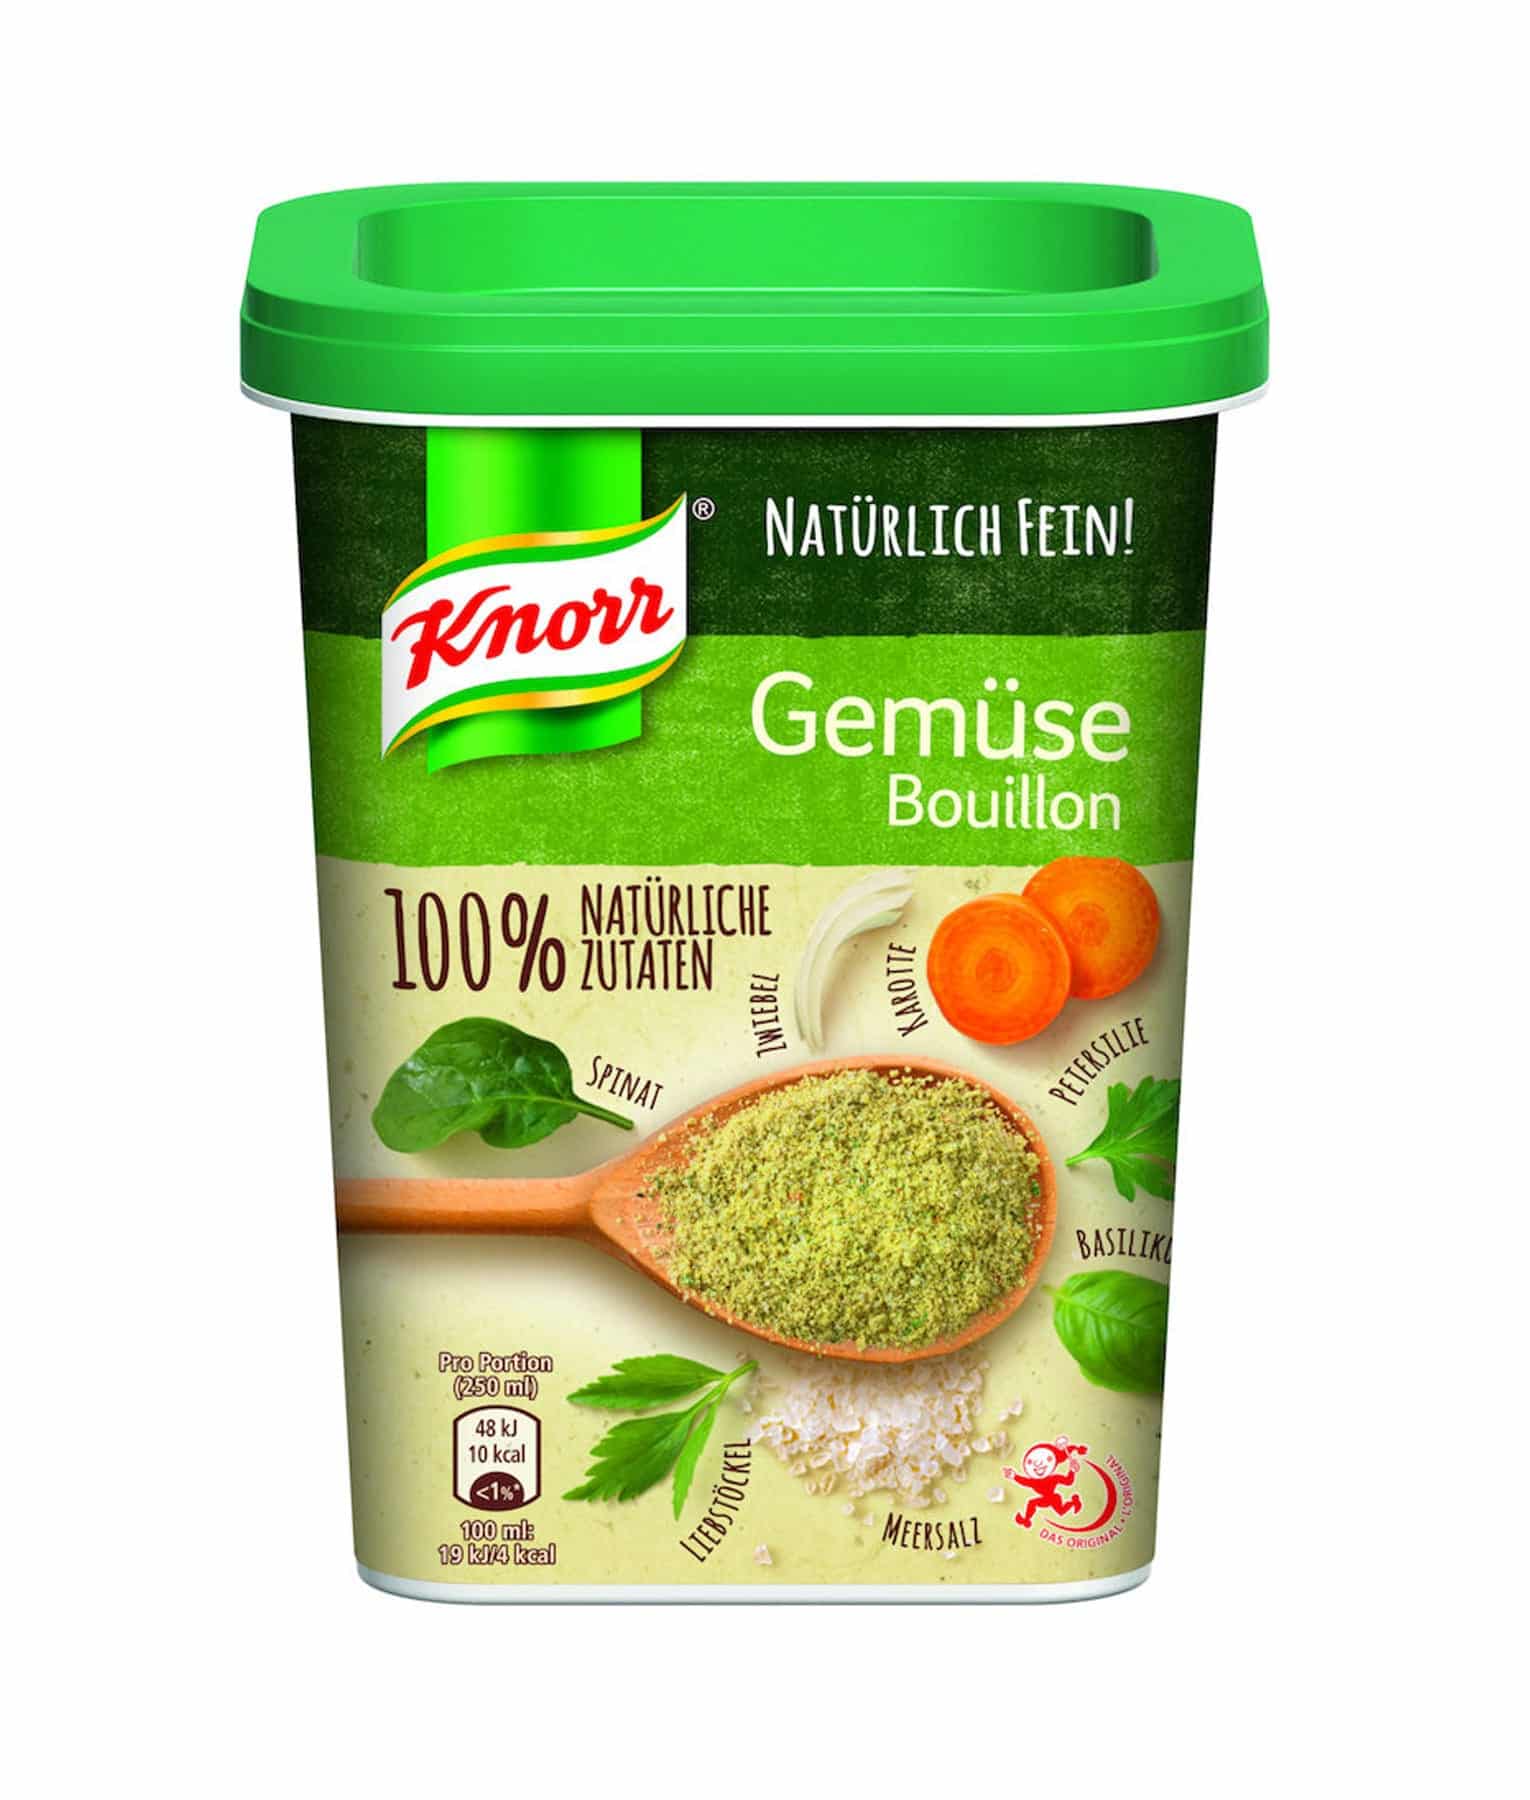 Knorr Aromat Seasoning Powder - Swiss Made Direct